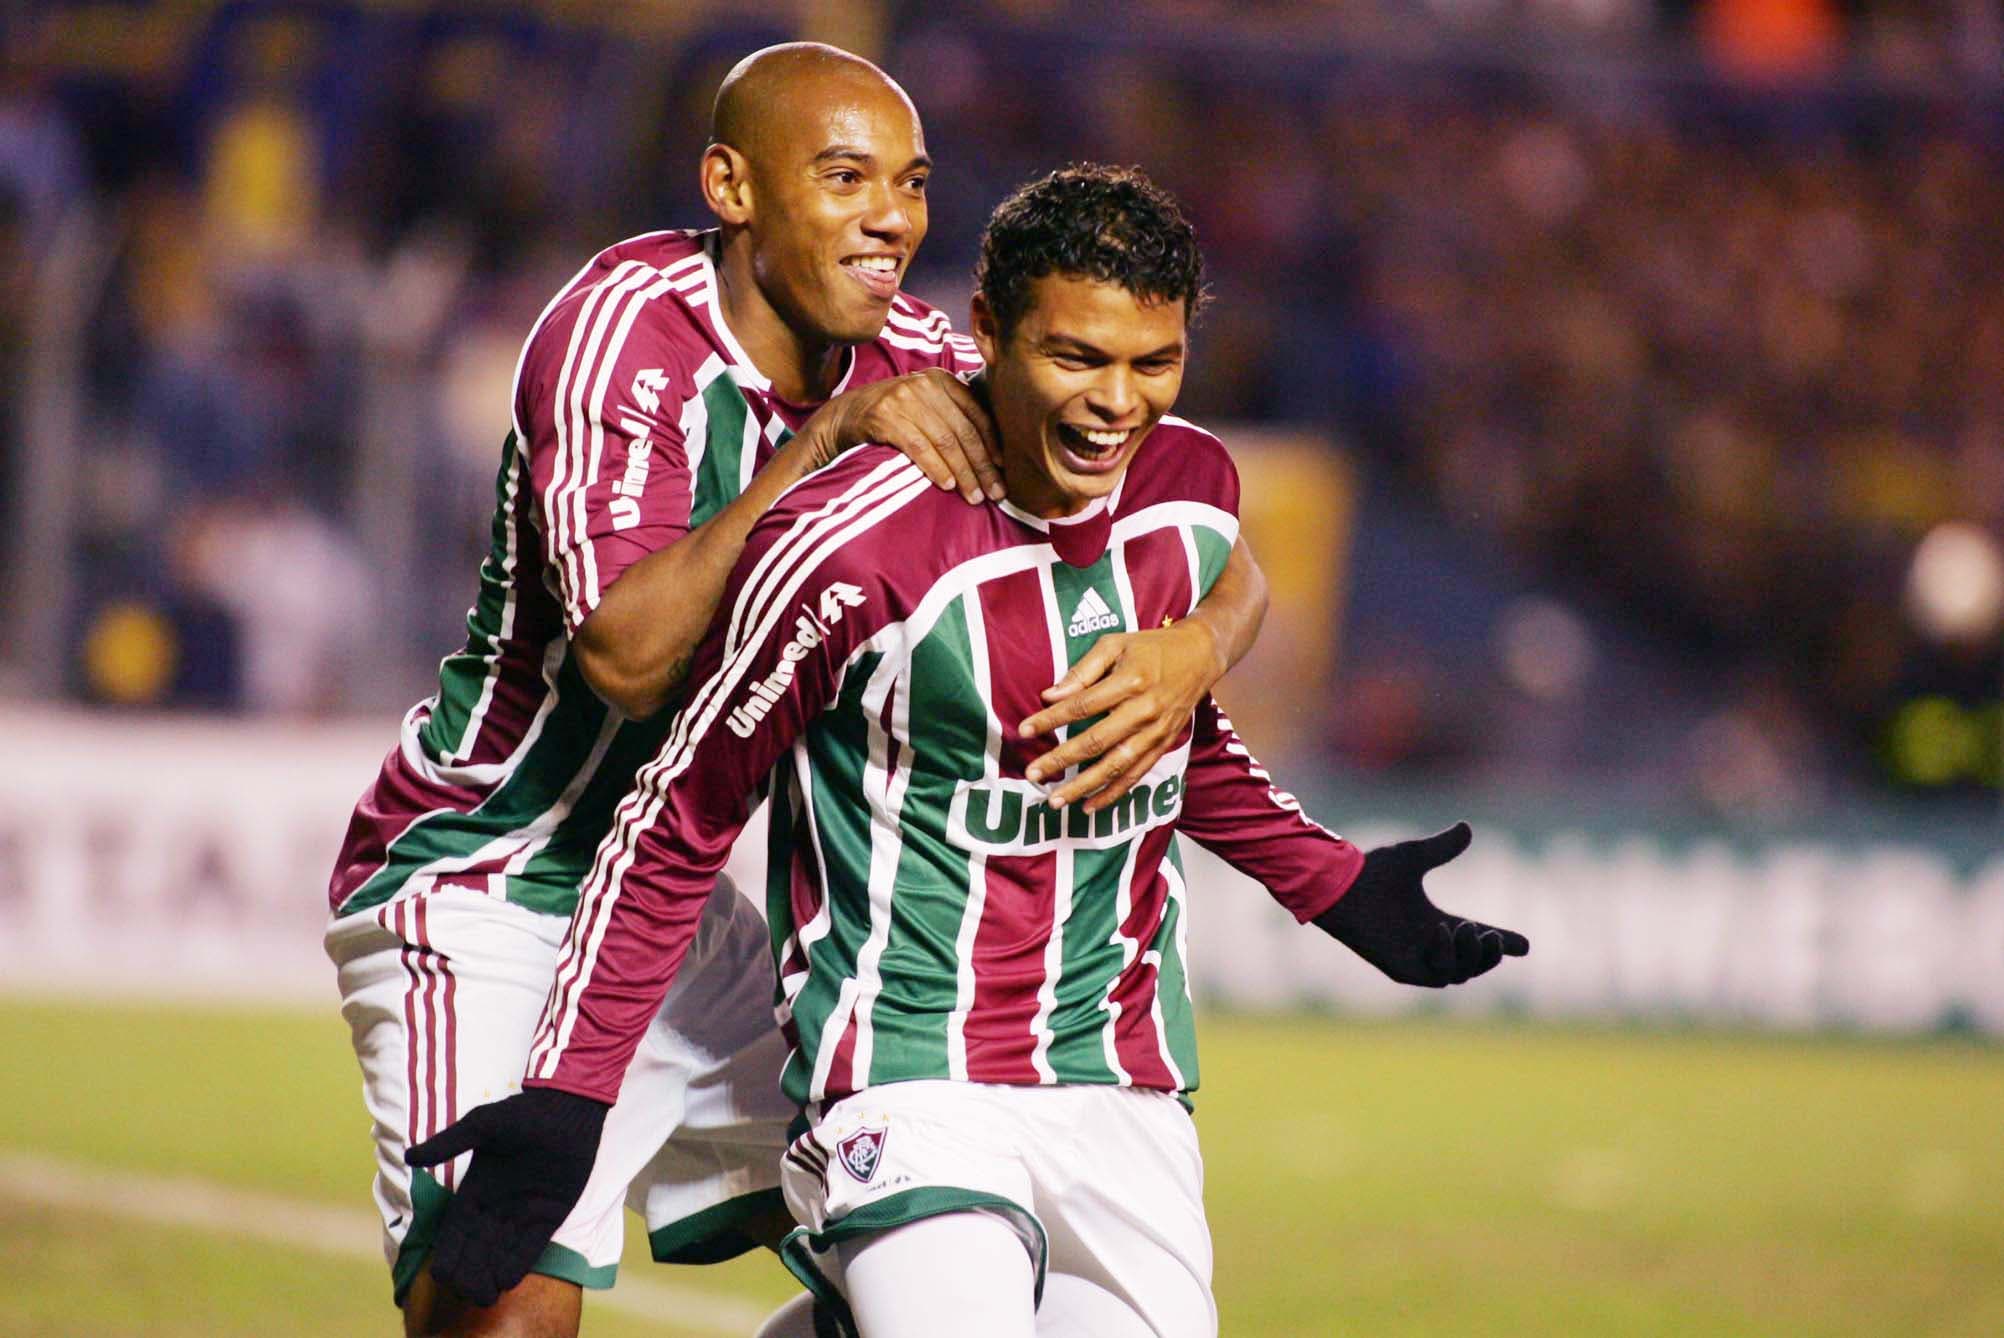 Vídeo Relembre os gols de Thiago Silva, capitão da seleção nesta